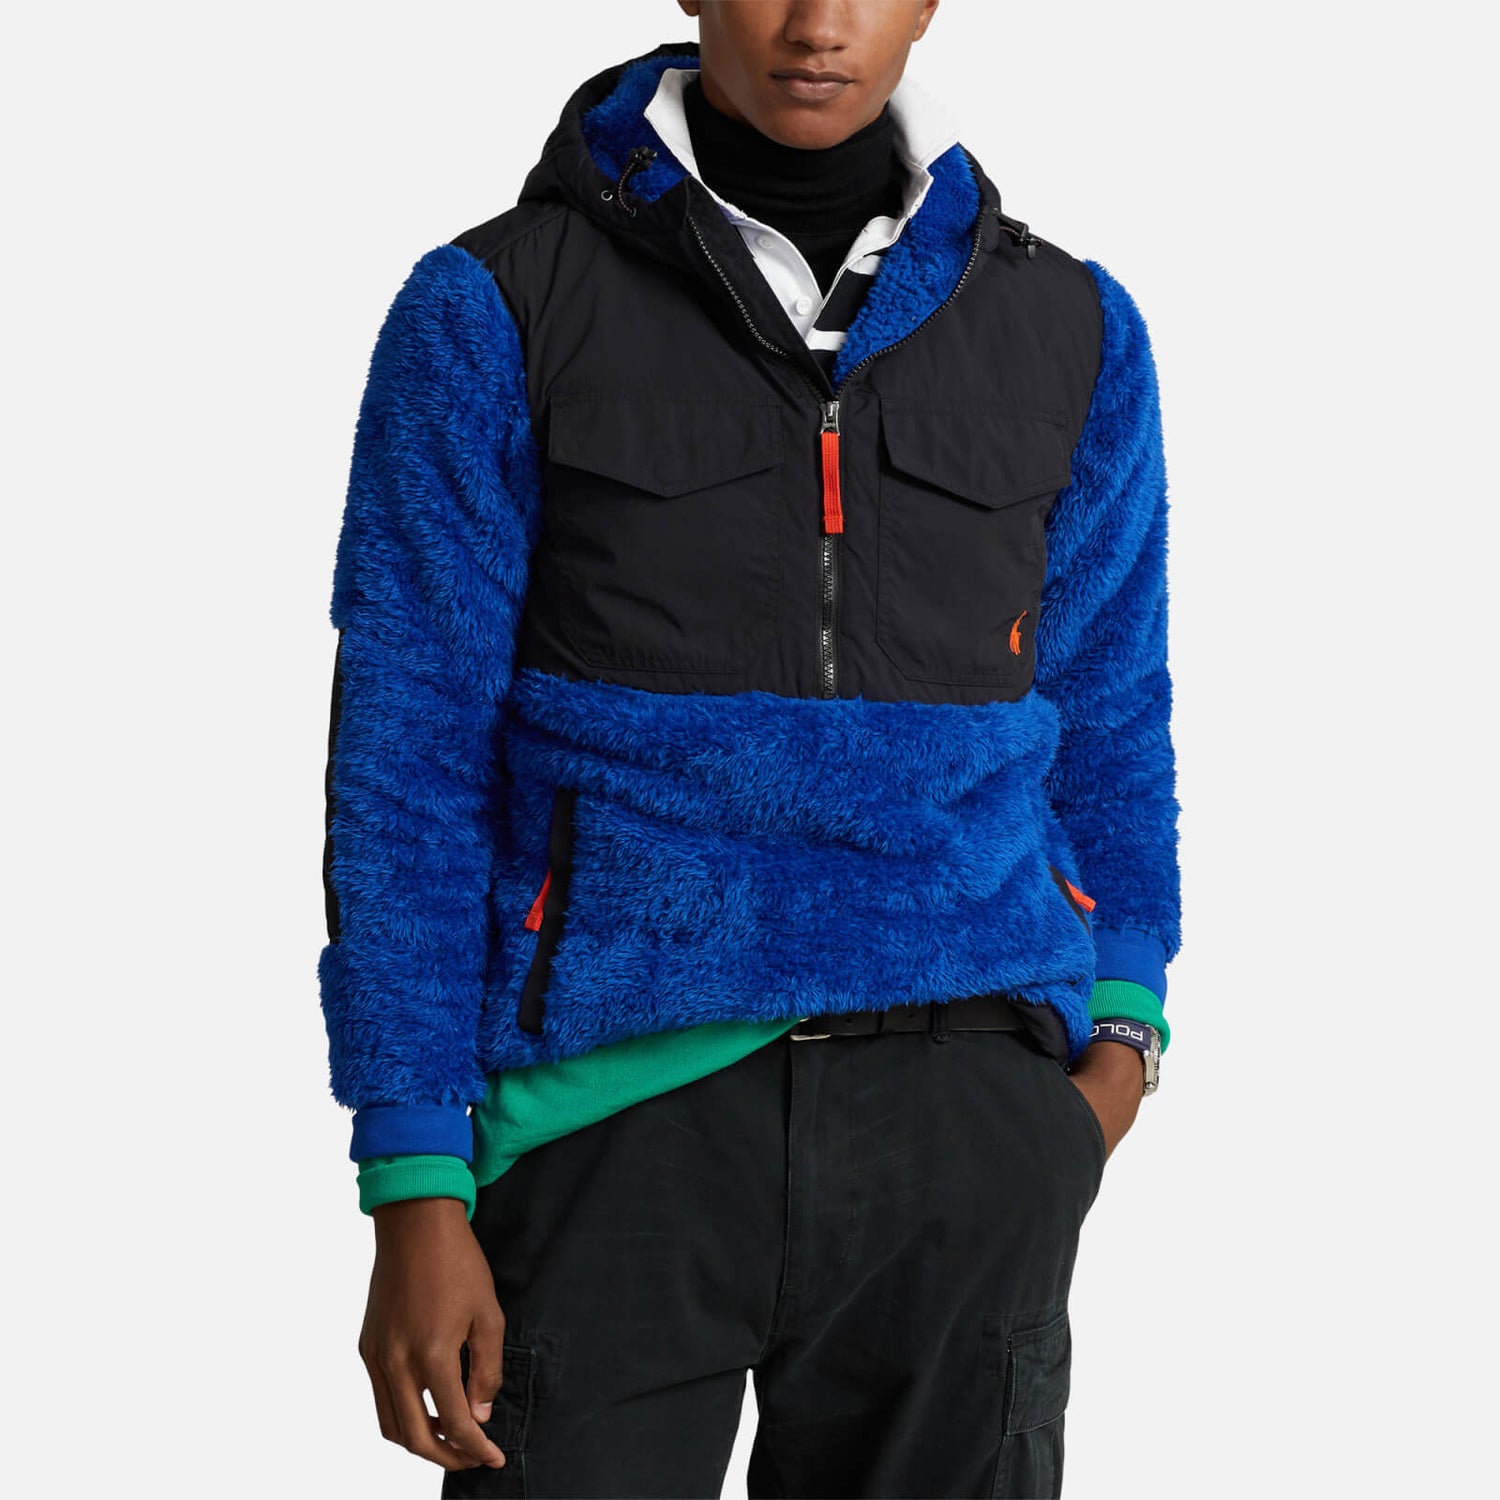 Polo Ralph Lauren Fleece and Nylon Half-Zip Jacket - S